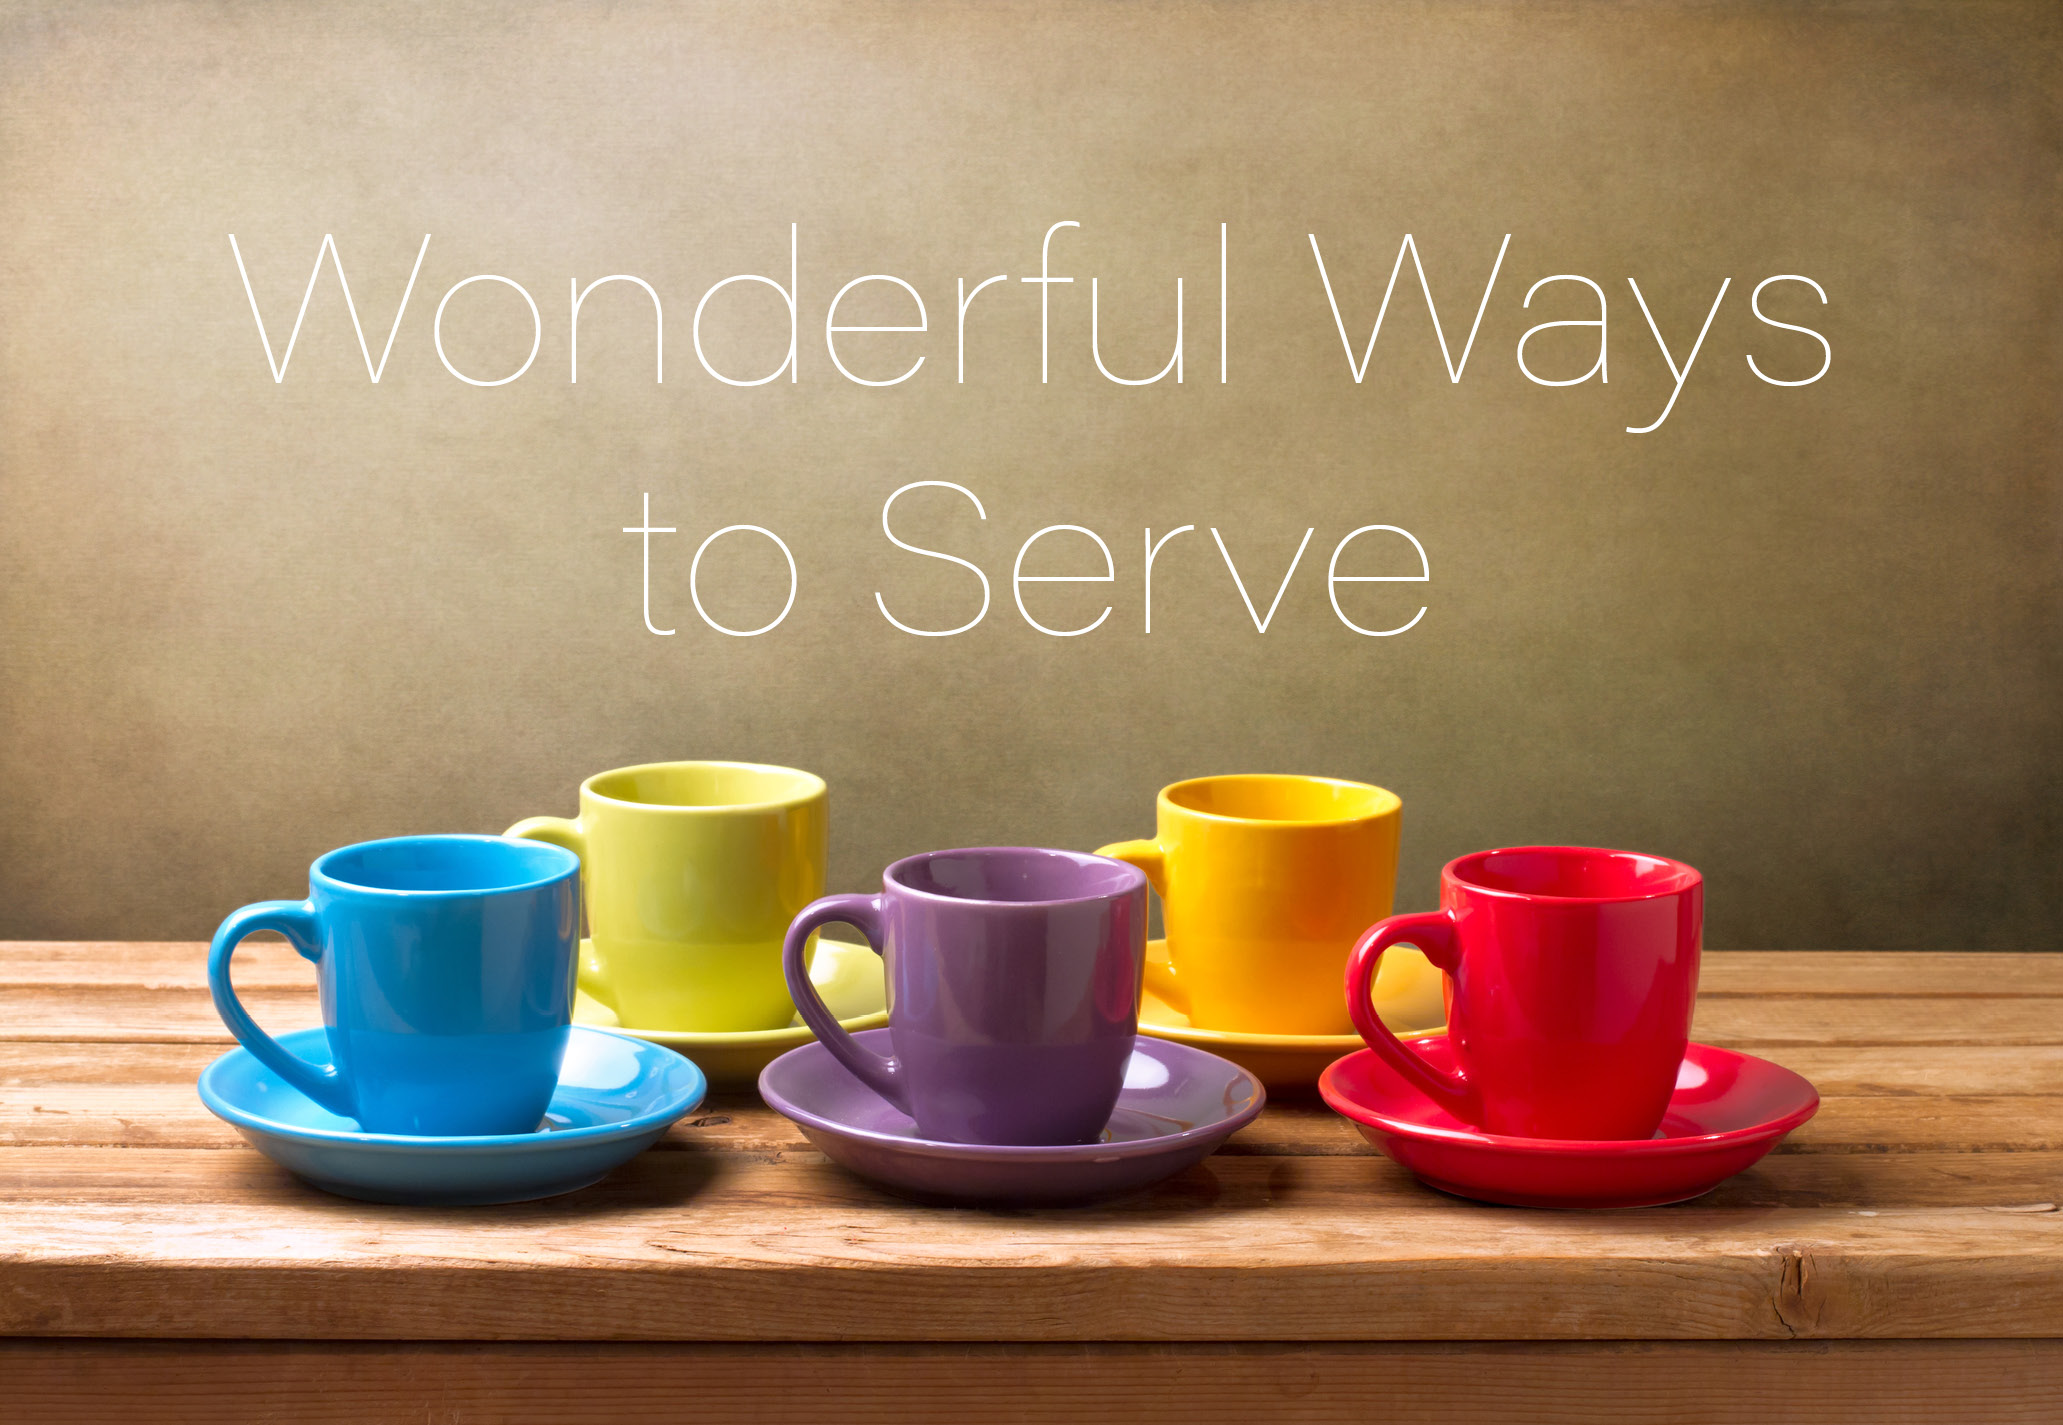 Wonderful Ways to Serve_Coffee Cups